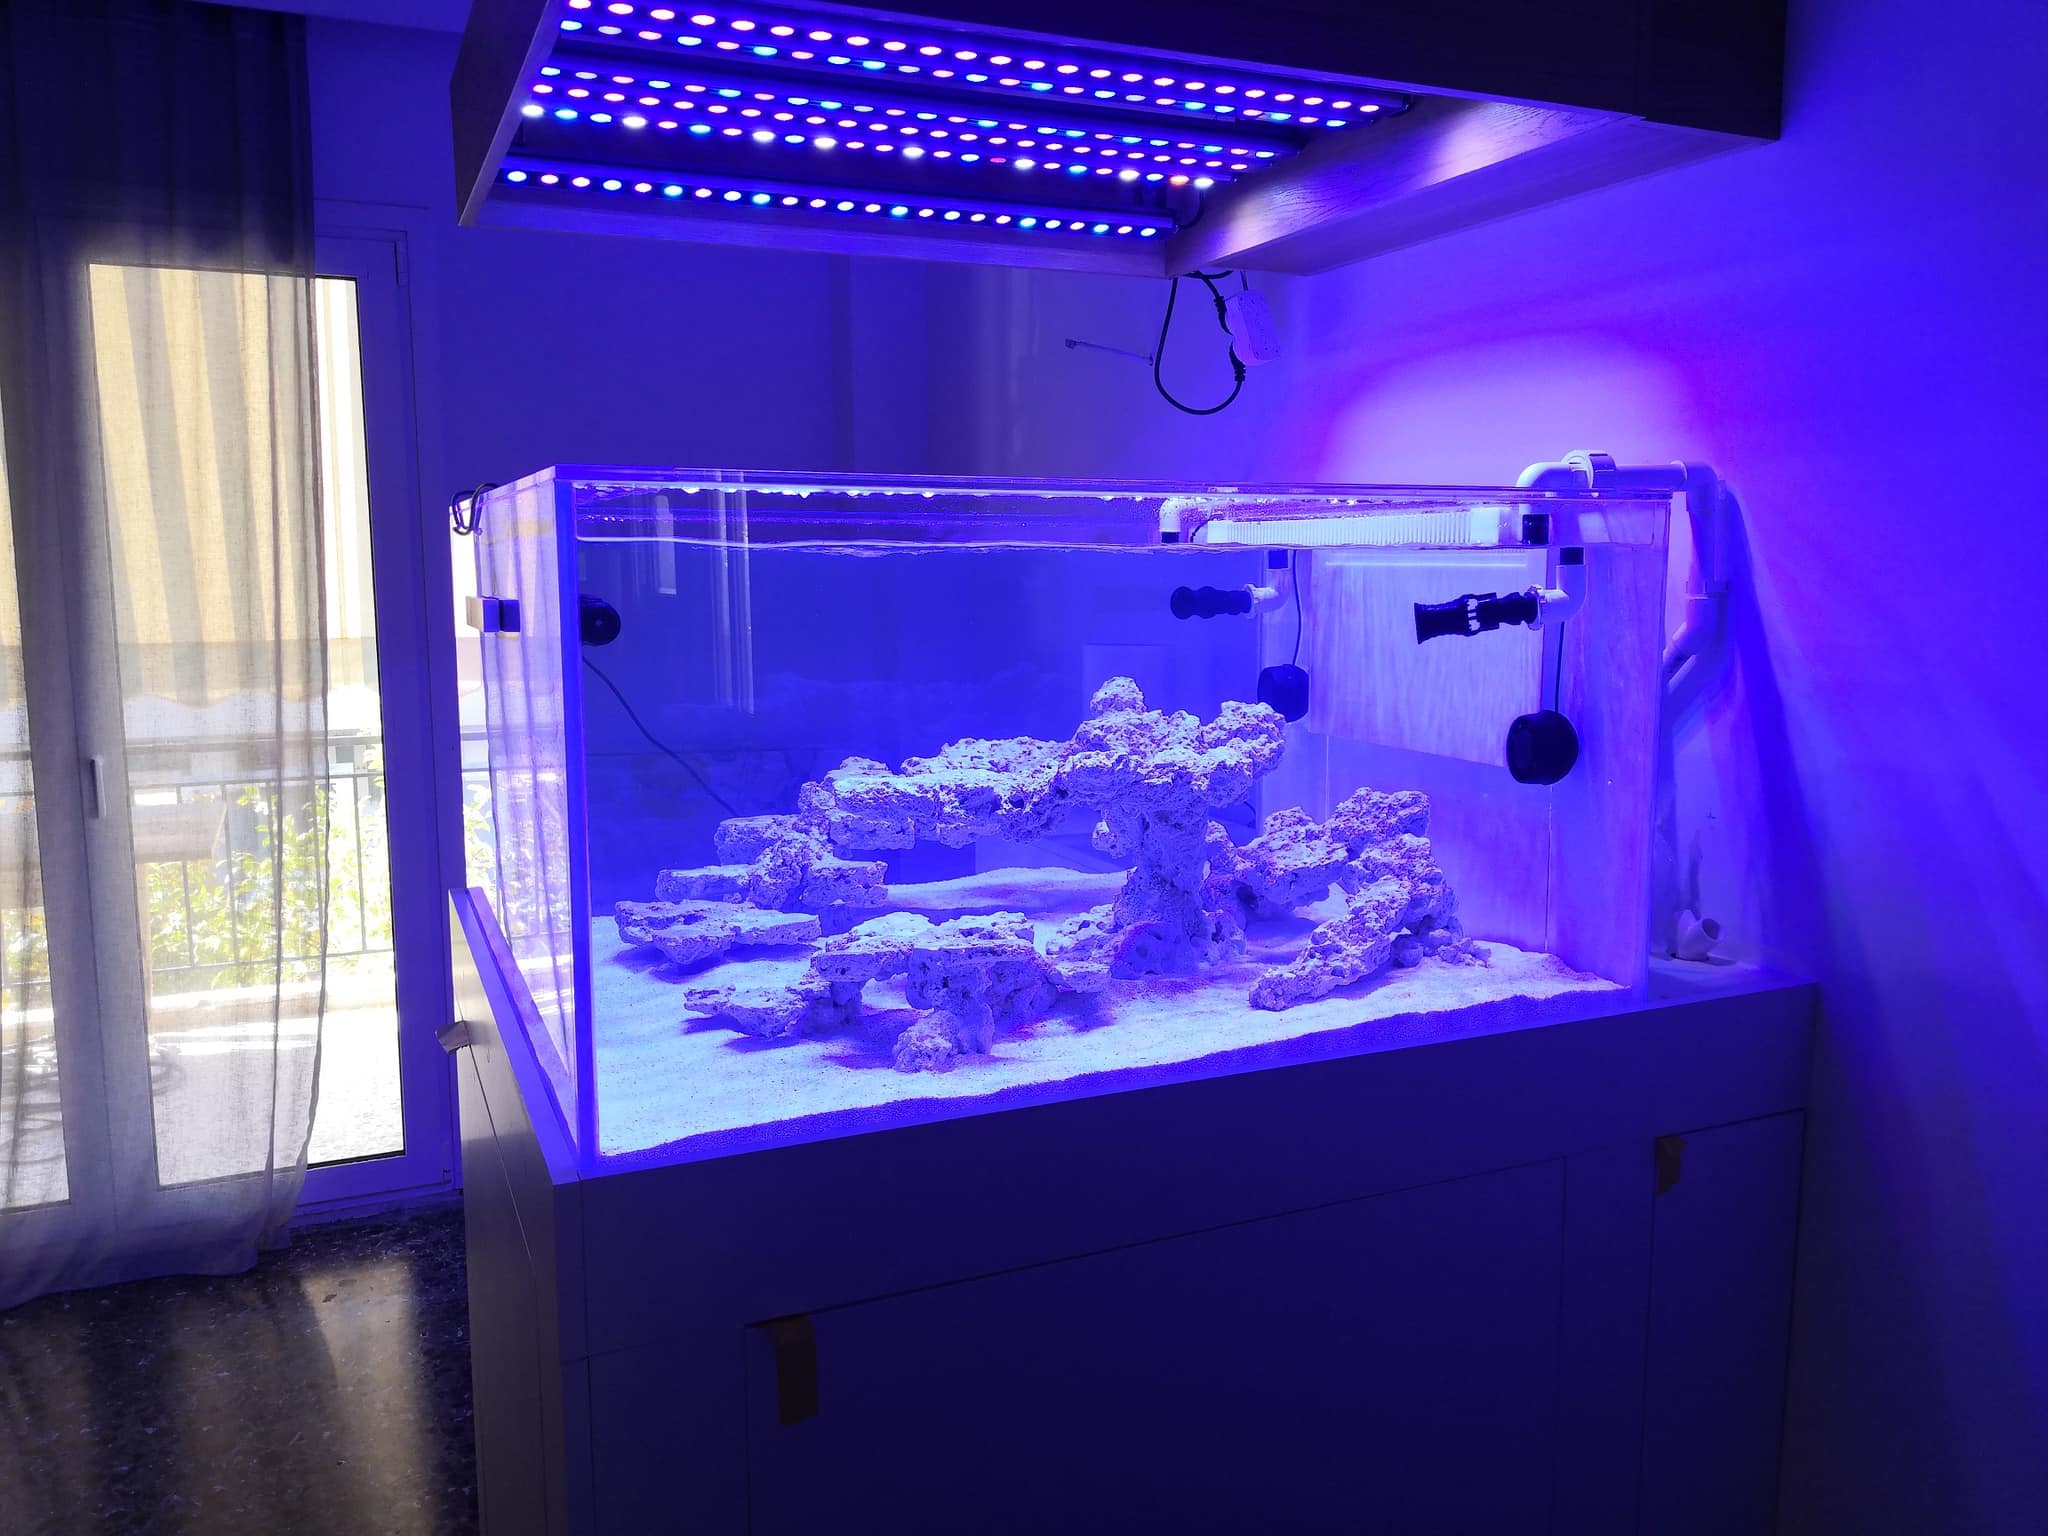 mélanger or3 led bar récif aquarium lumière led